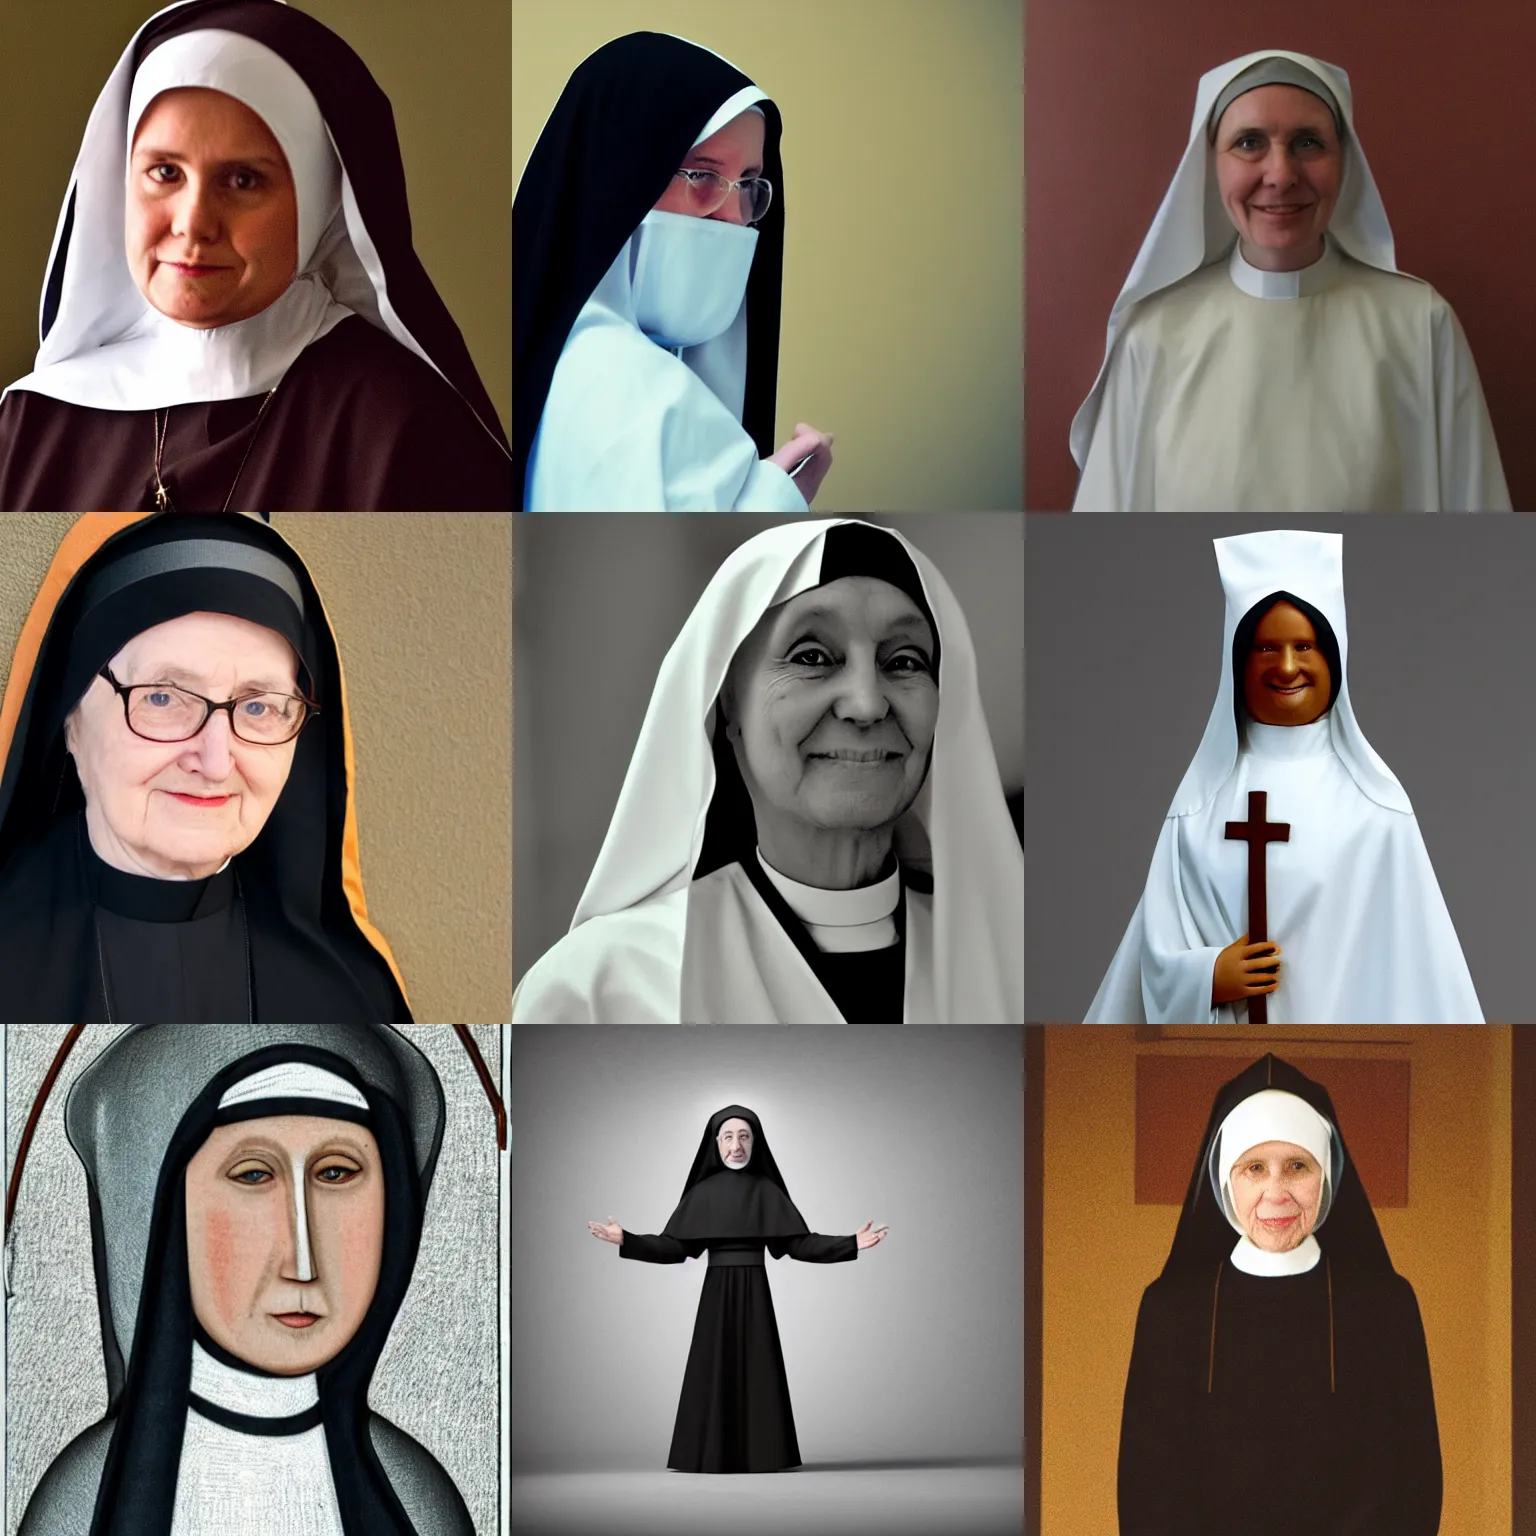 Prompt: a nun